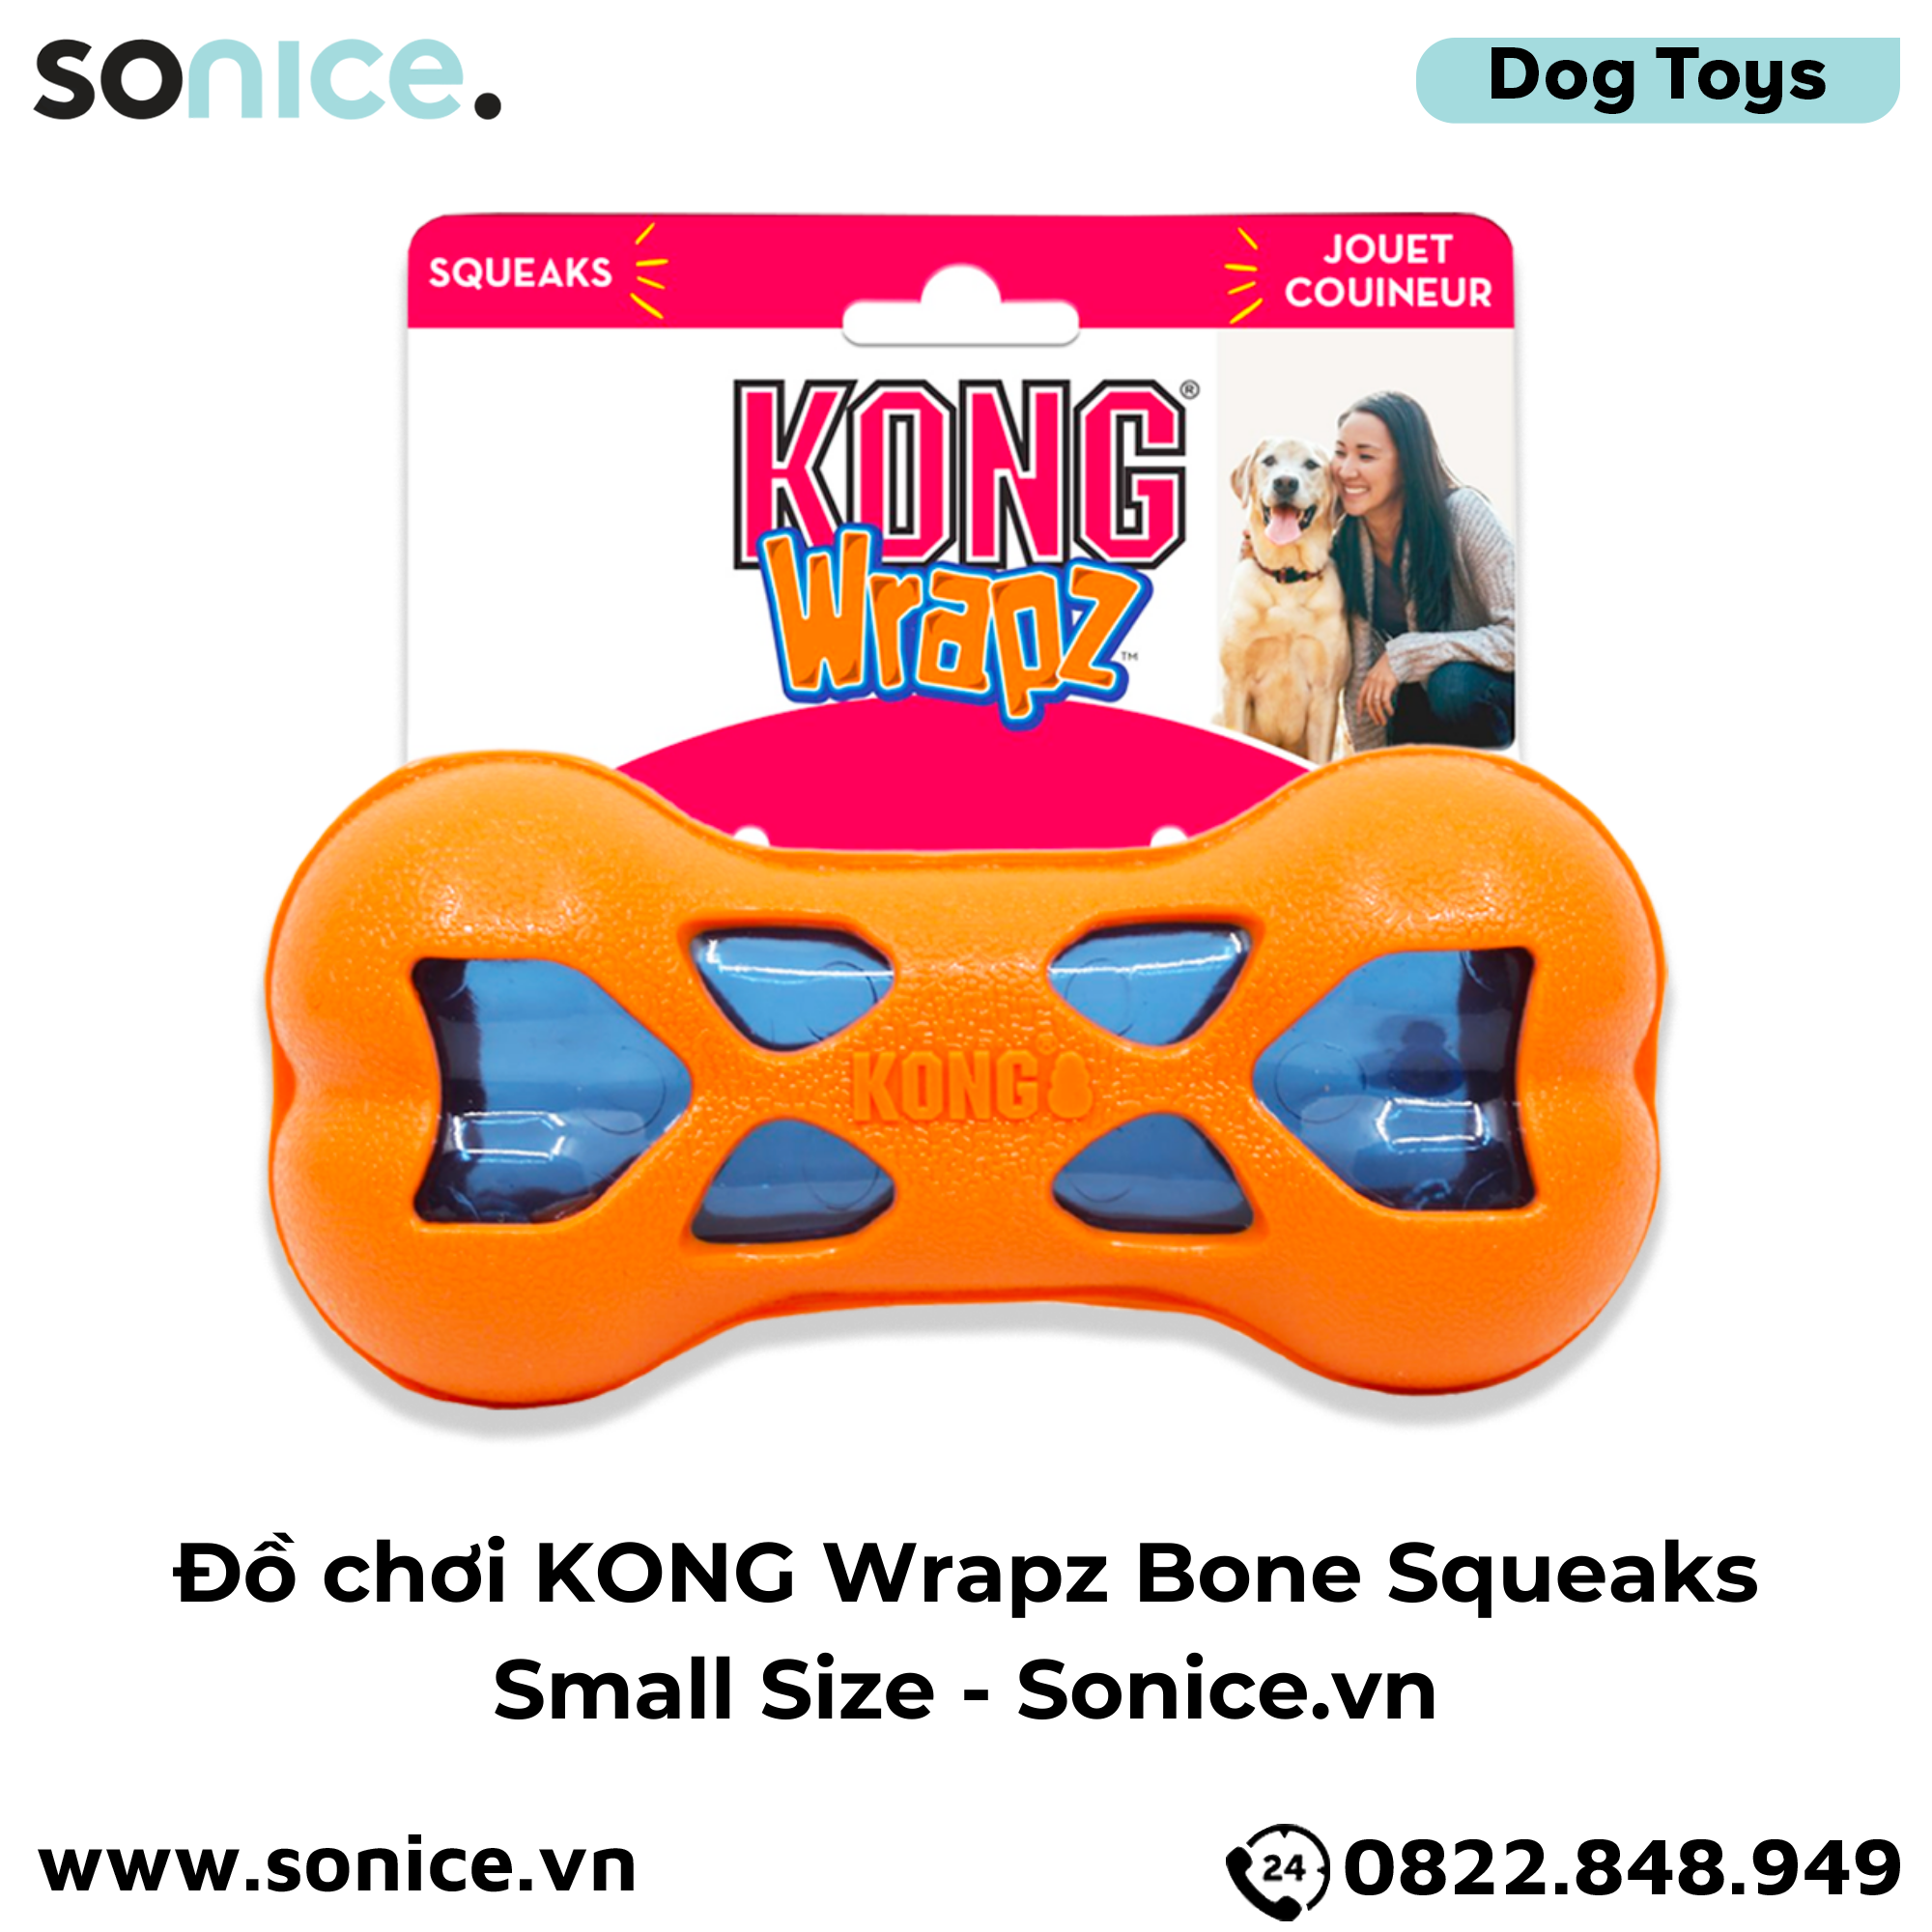  Đồ chơi KONG Wrapz Bone Squeaks Small Size - Hình khúc xương SONICE. 